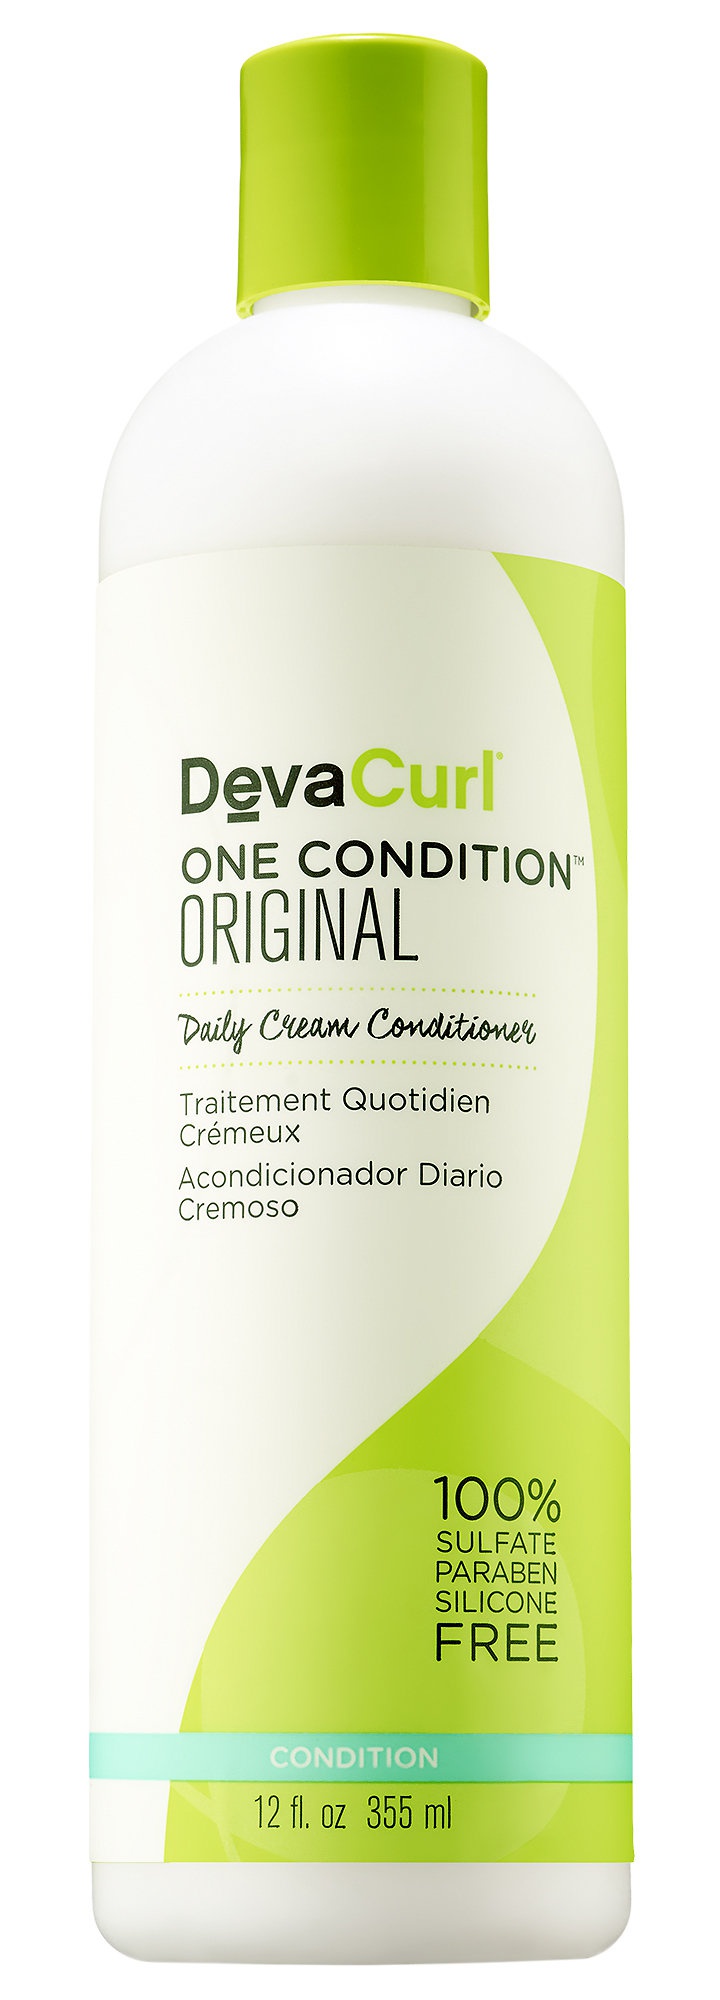 DevaCurl One Condition Original